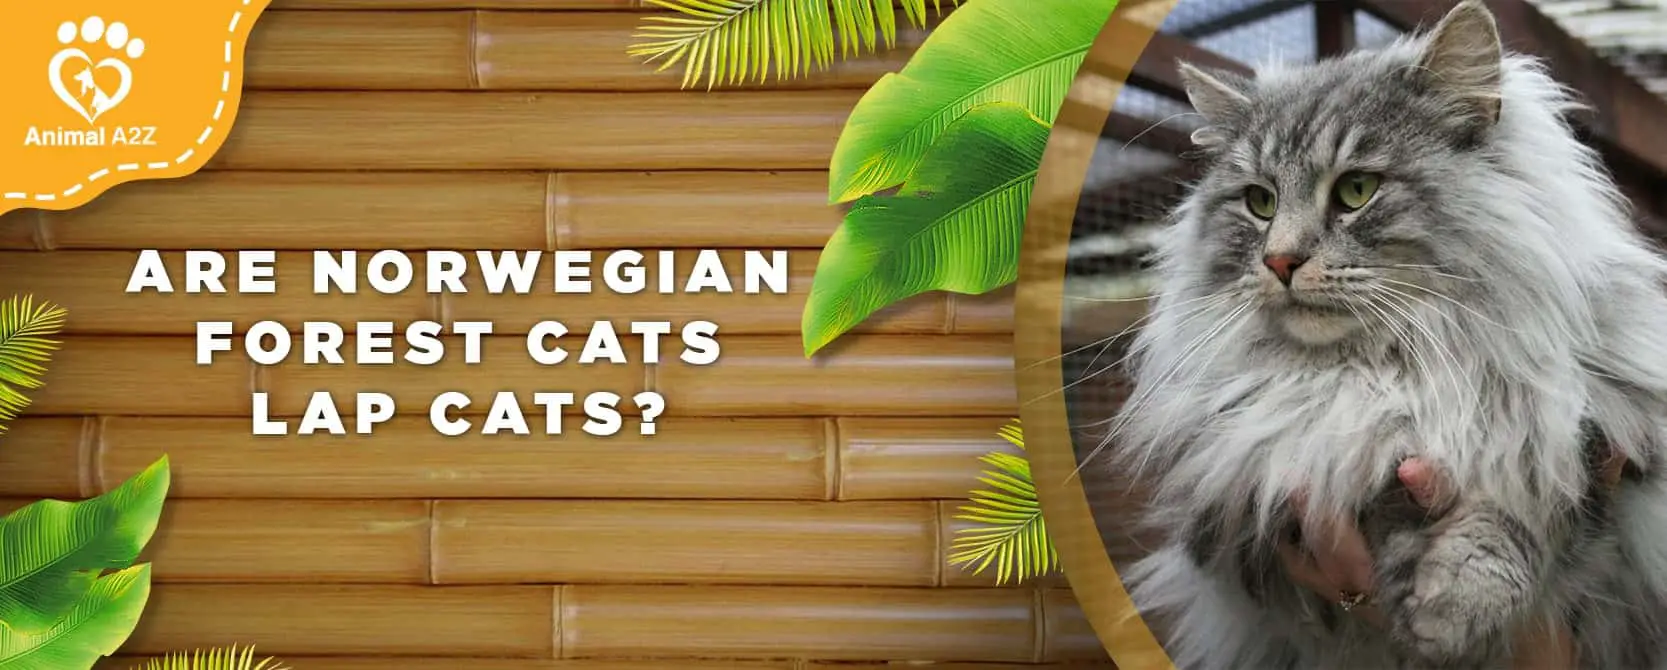 Les chats des forêts norvégiennes sont-ils des chats de salon ?